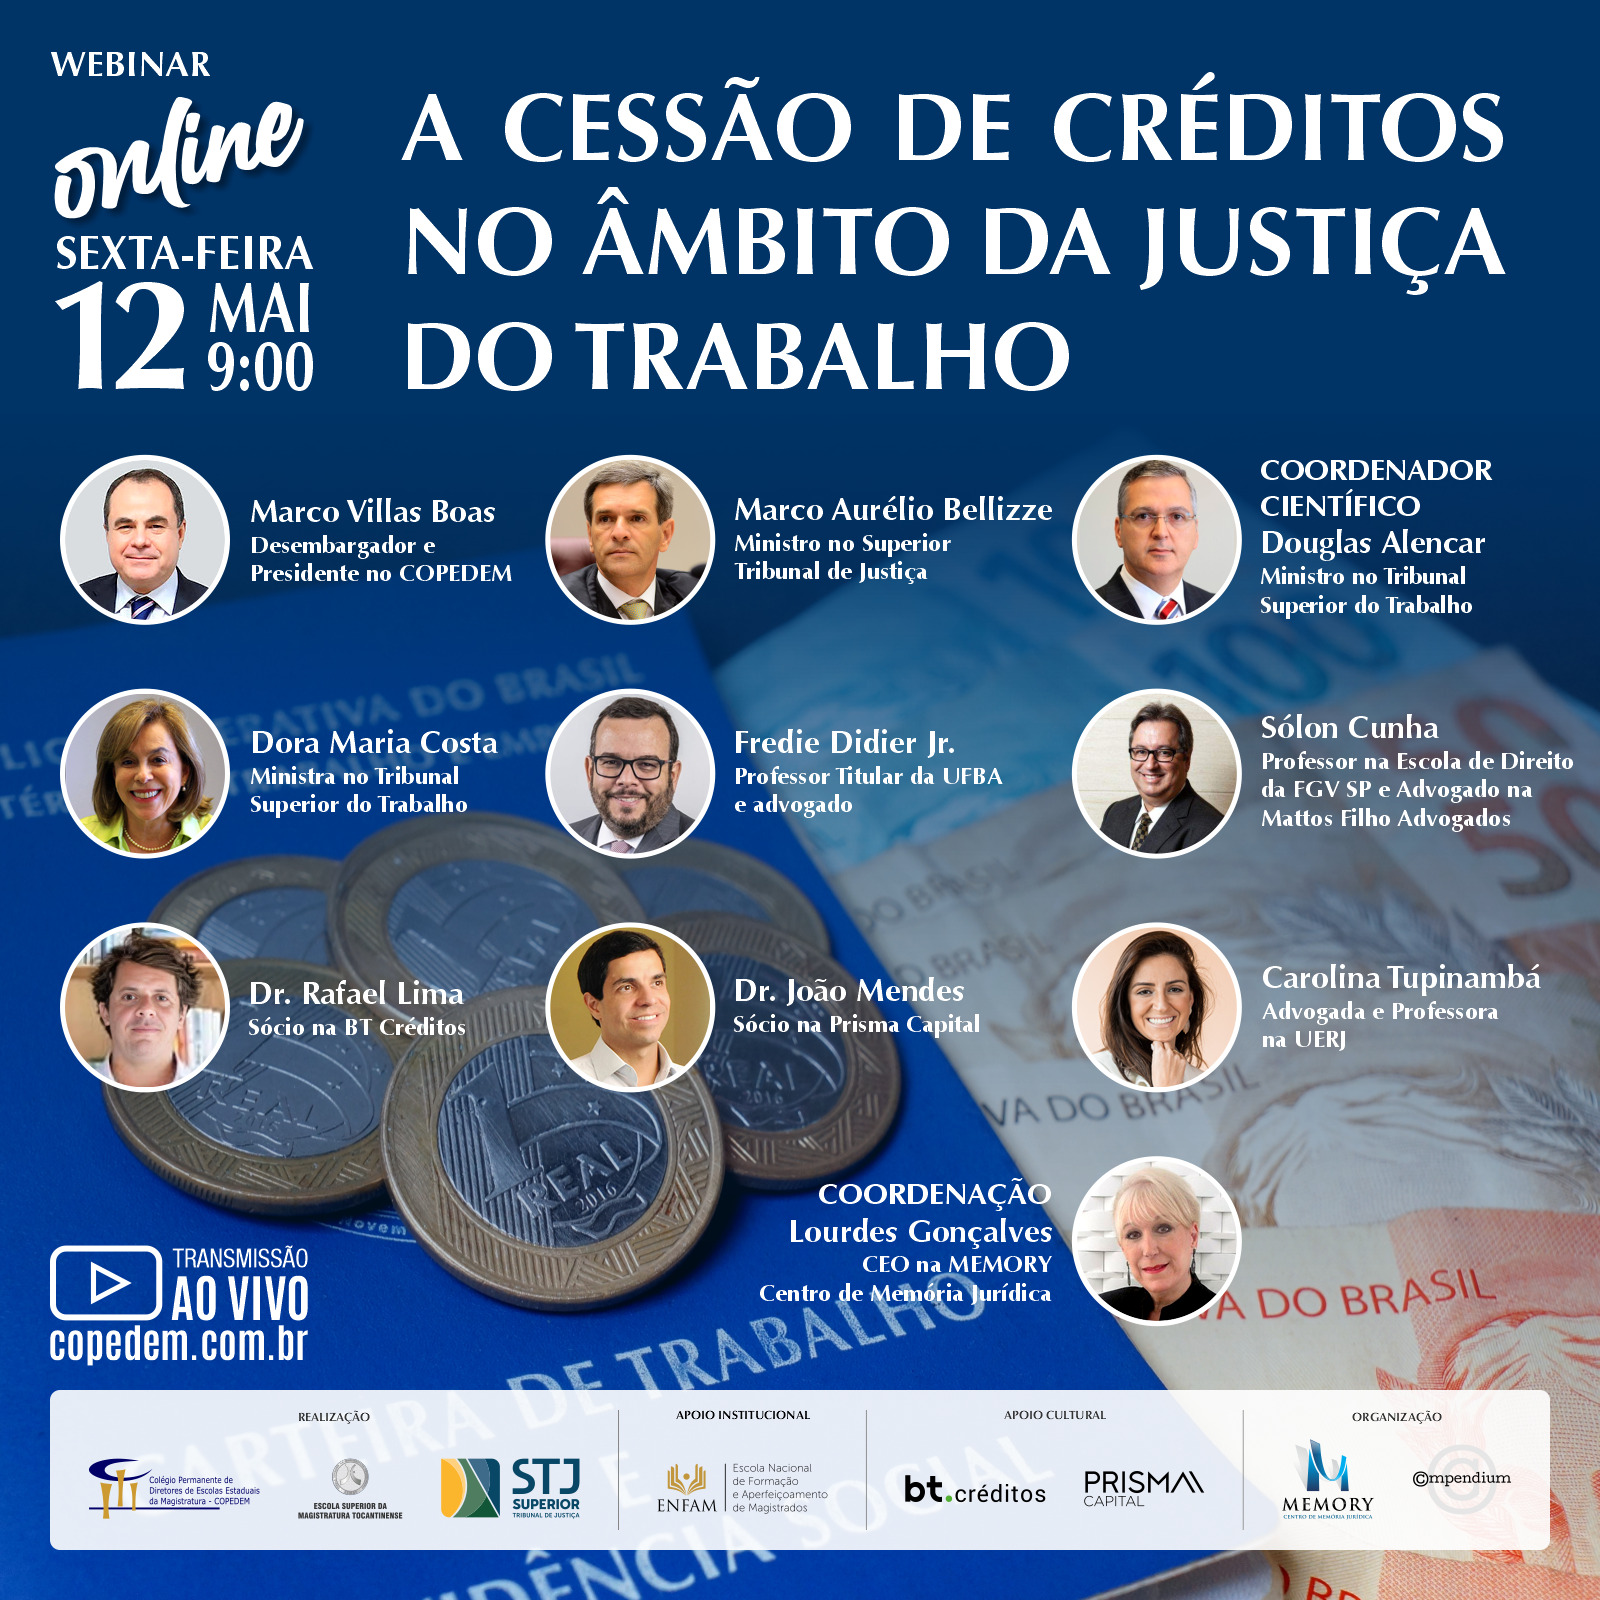 Webinar "A CESSÃO DE CRÉDITOS NO ÂMBITO DA JUSTIÇA DO TRABALHO"